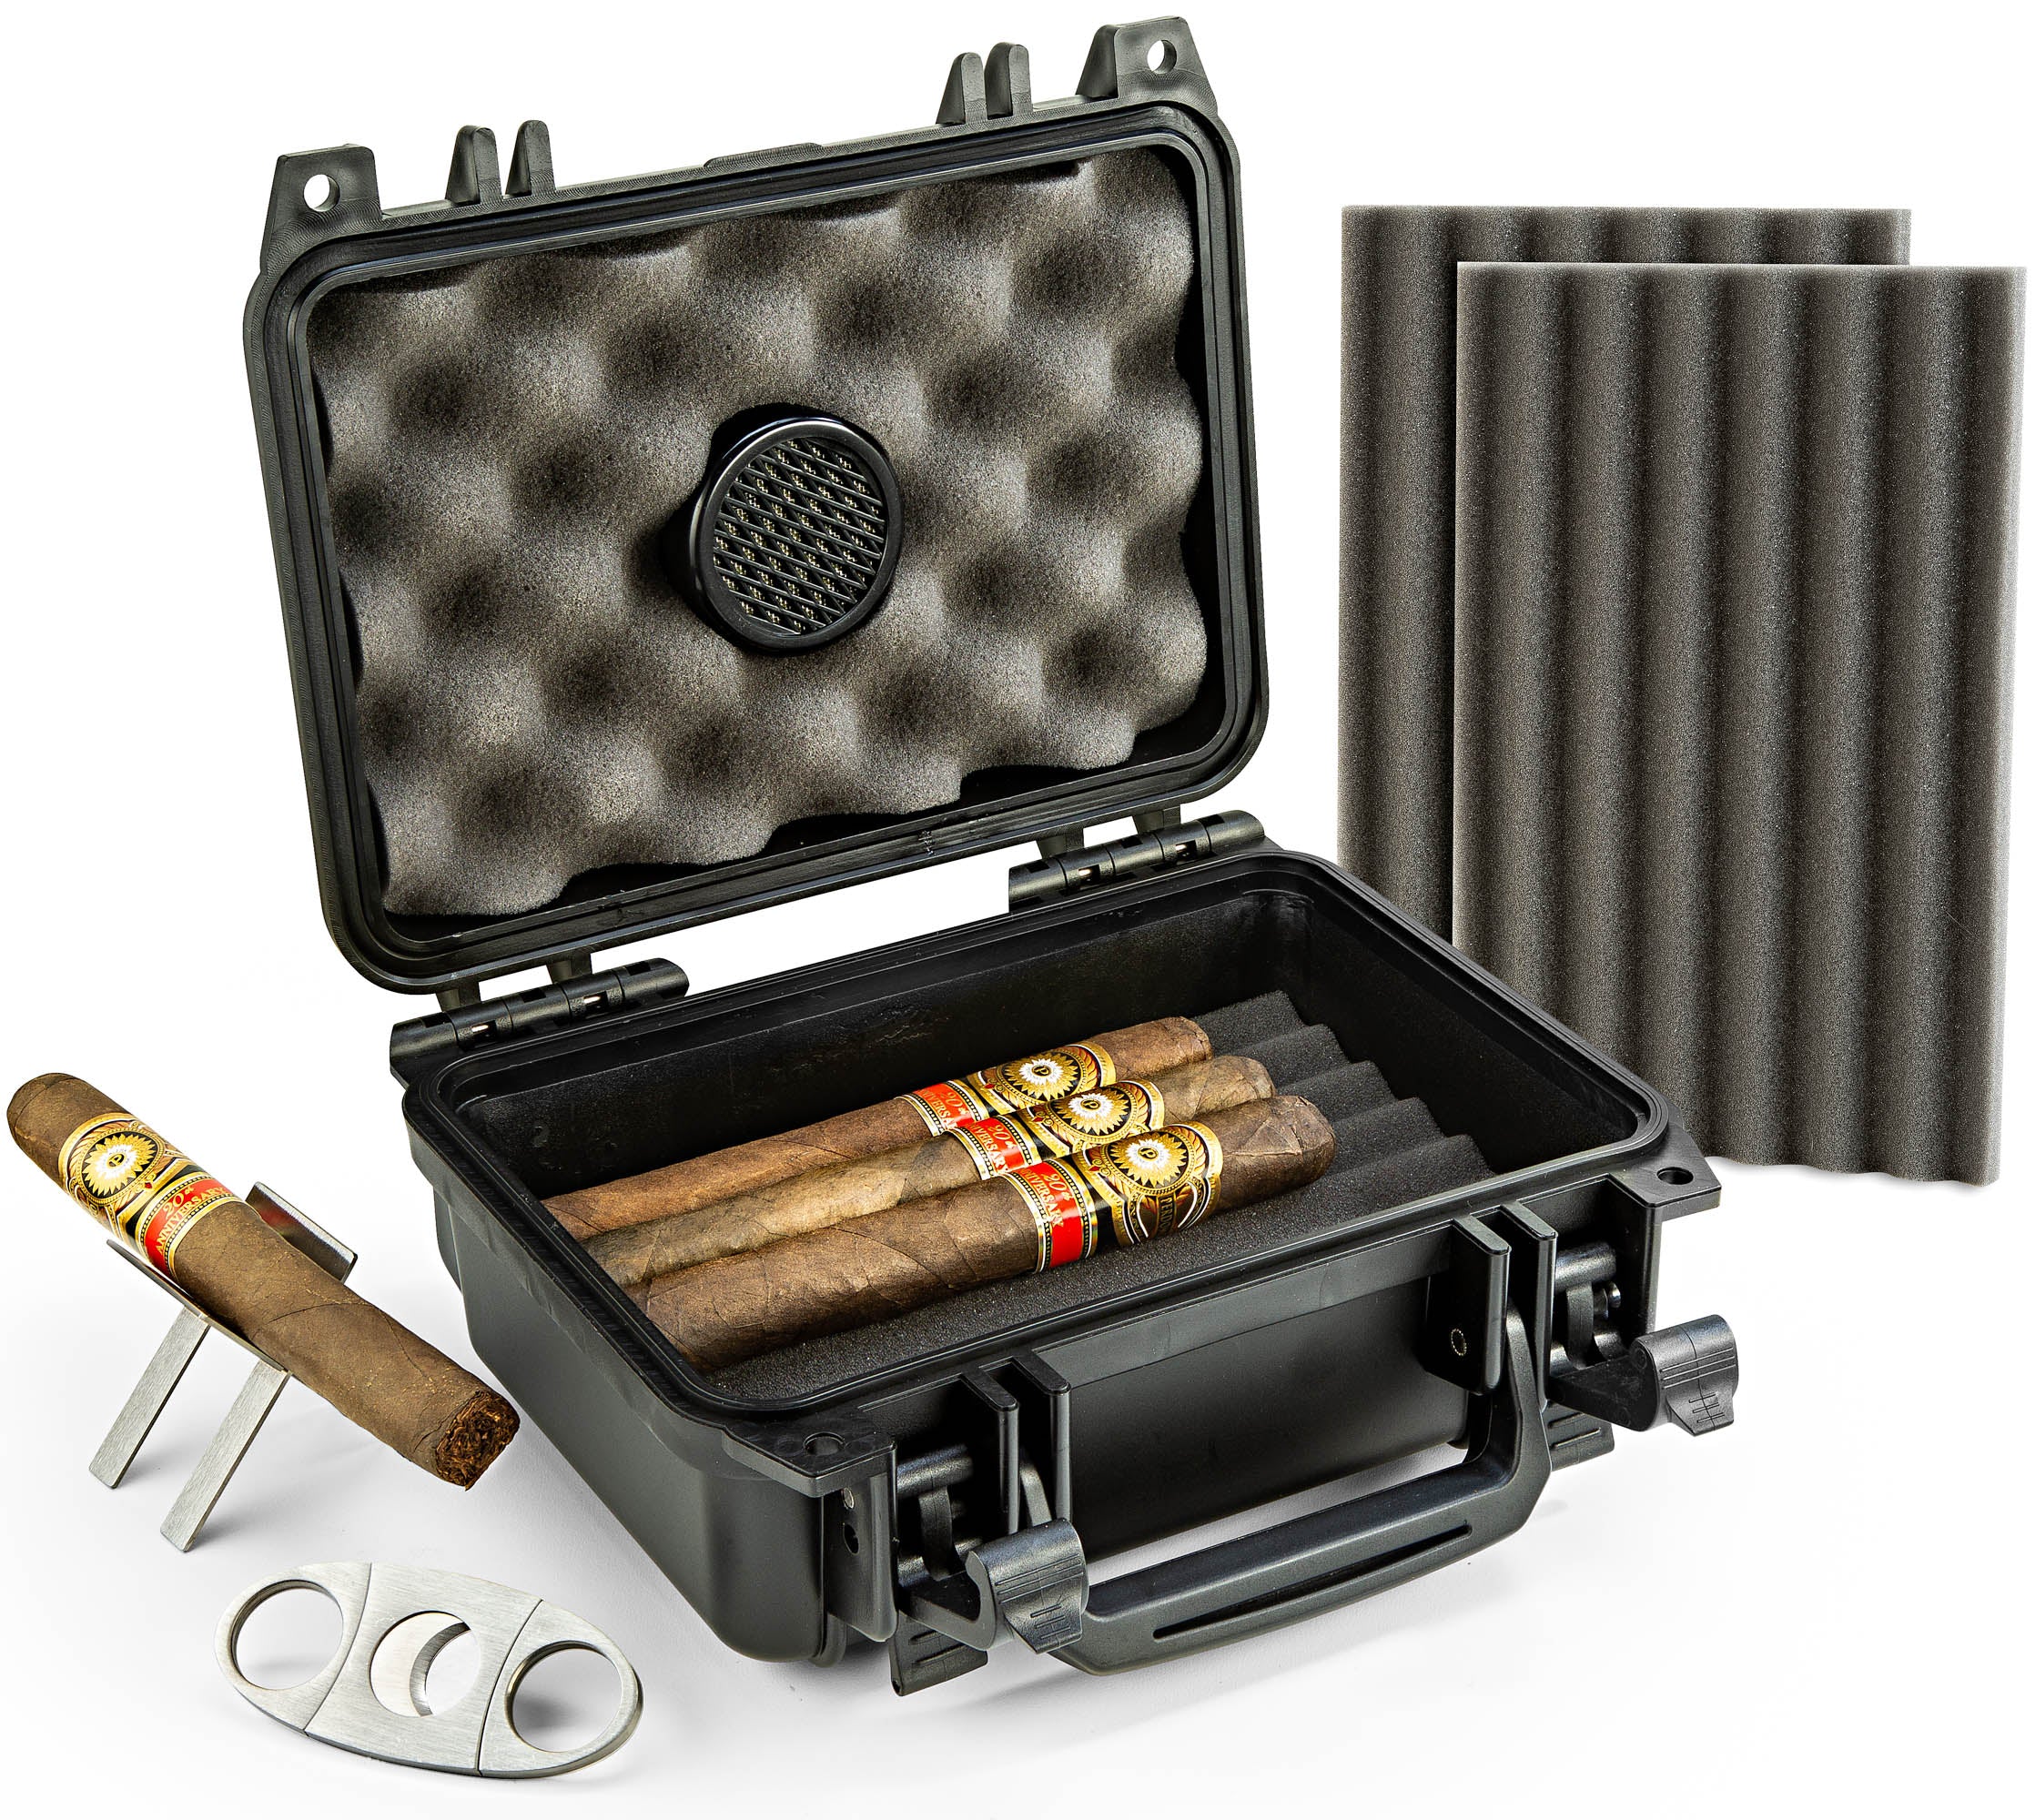 防水旅行雪茄雪茄盒-可容纳20支雪茄-与配件套件(包括雪茄切割机 & 折叠式雪茄架)